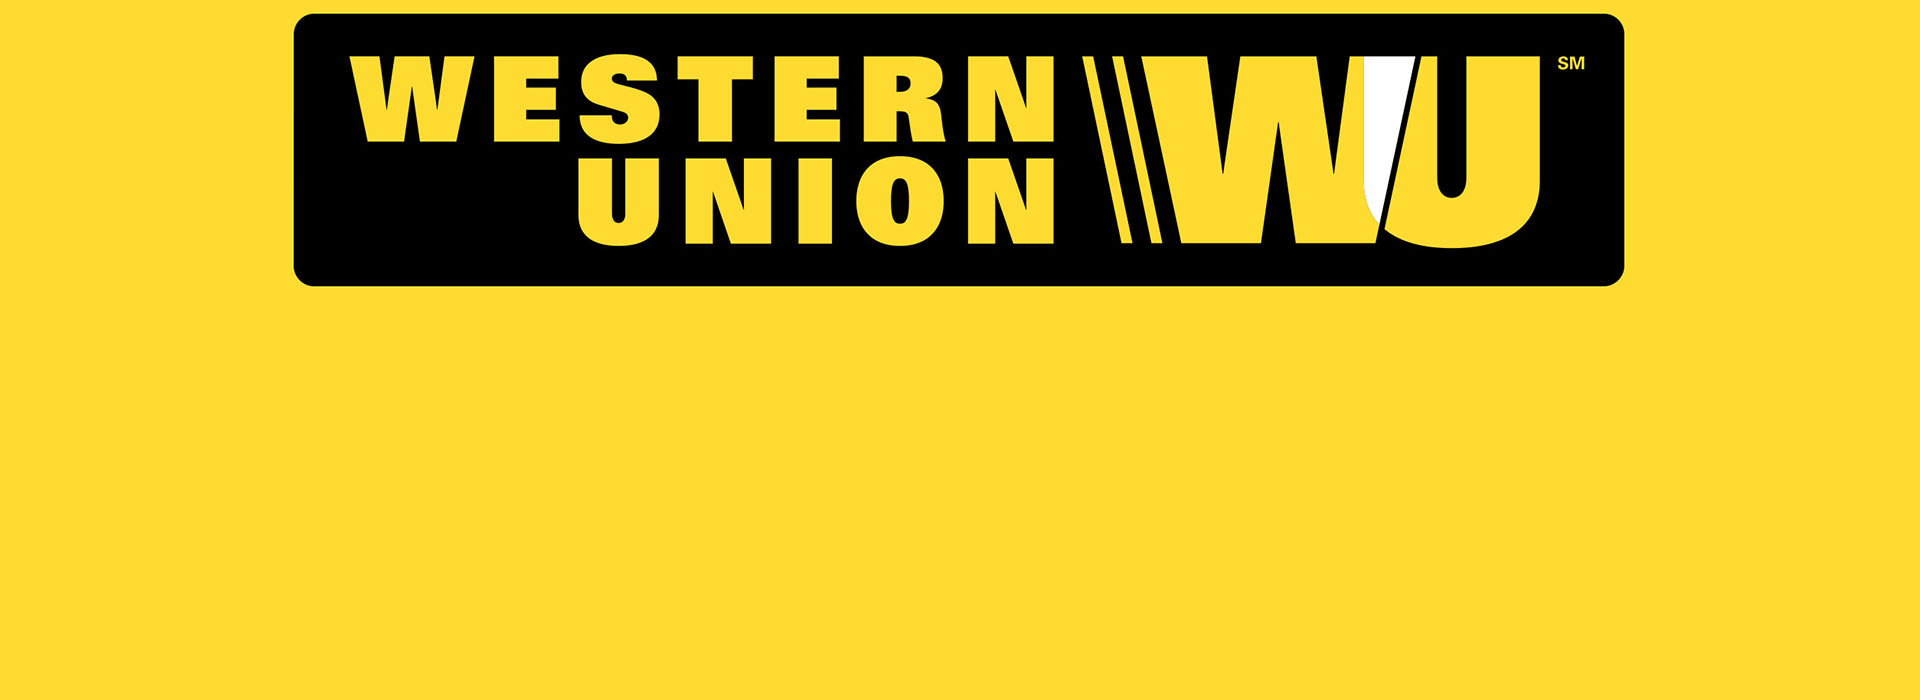 A képen a Western Union logója látható.